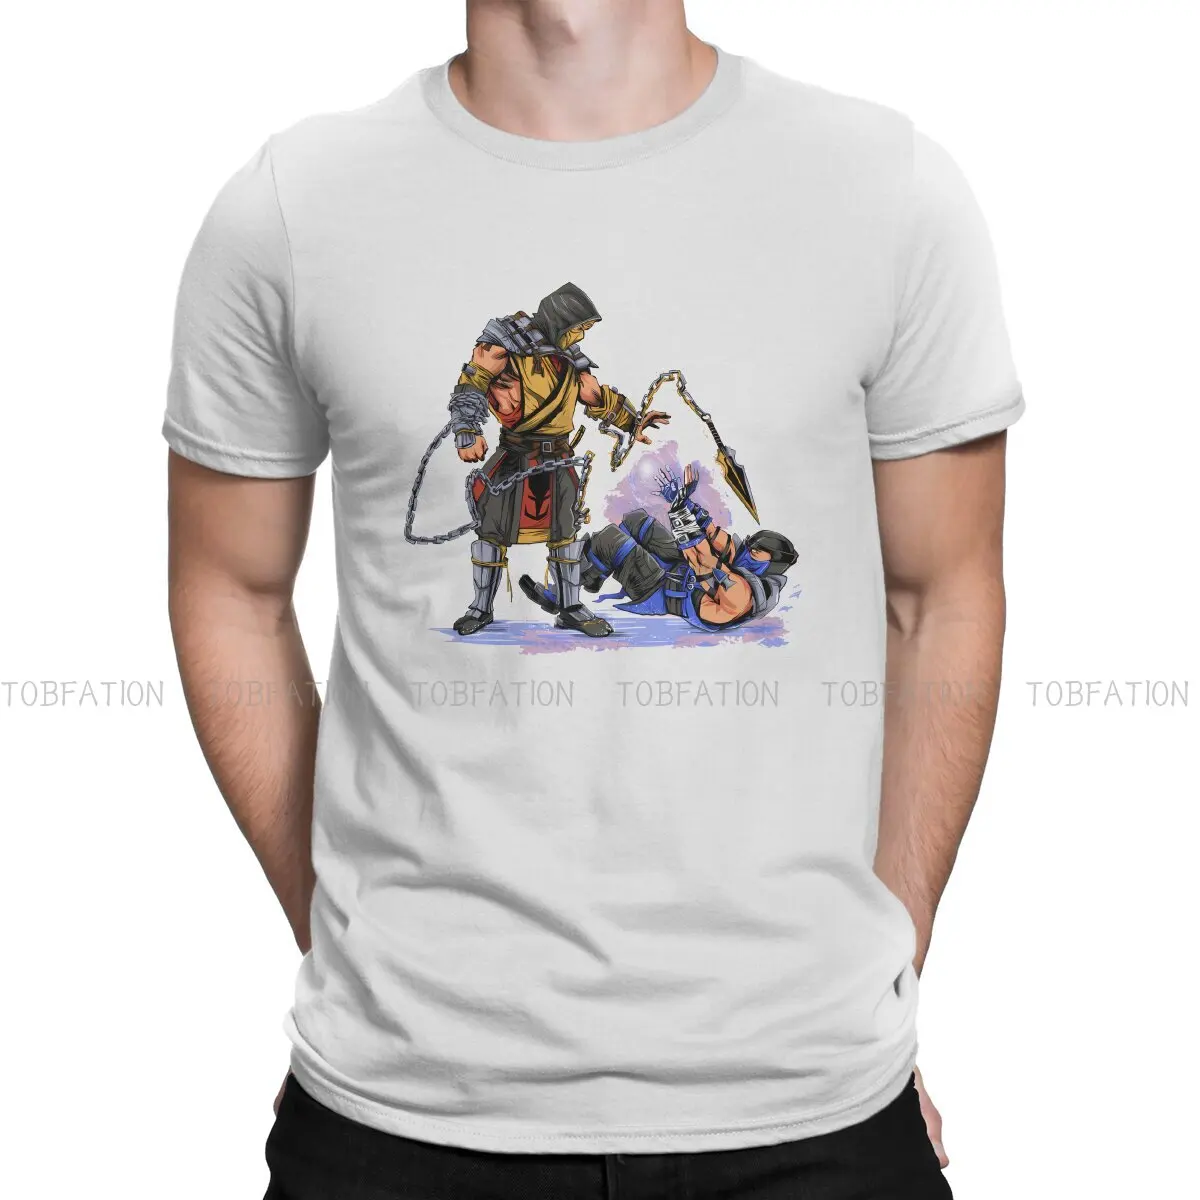 

Футболка водохранилище ниндзя, Повседневная футболка Mortal Kombat MK Midway Game Style, уличная одежда, удобная мужская футболка, уникальная Подарочная одежда